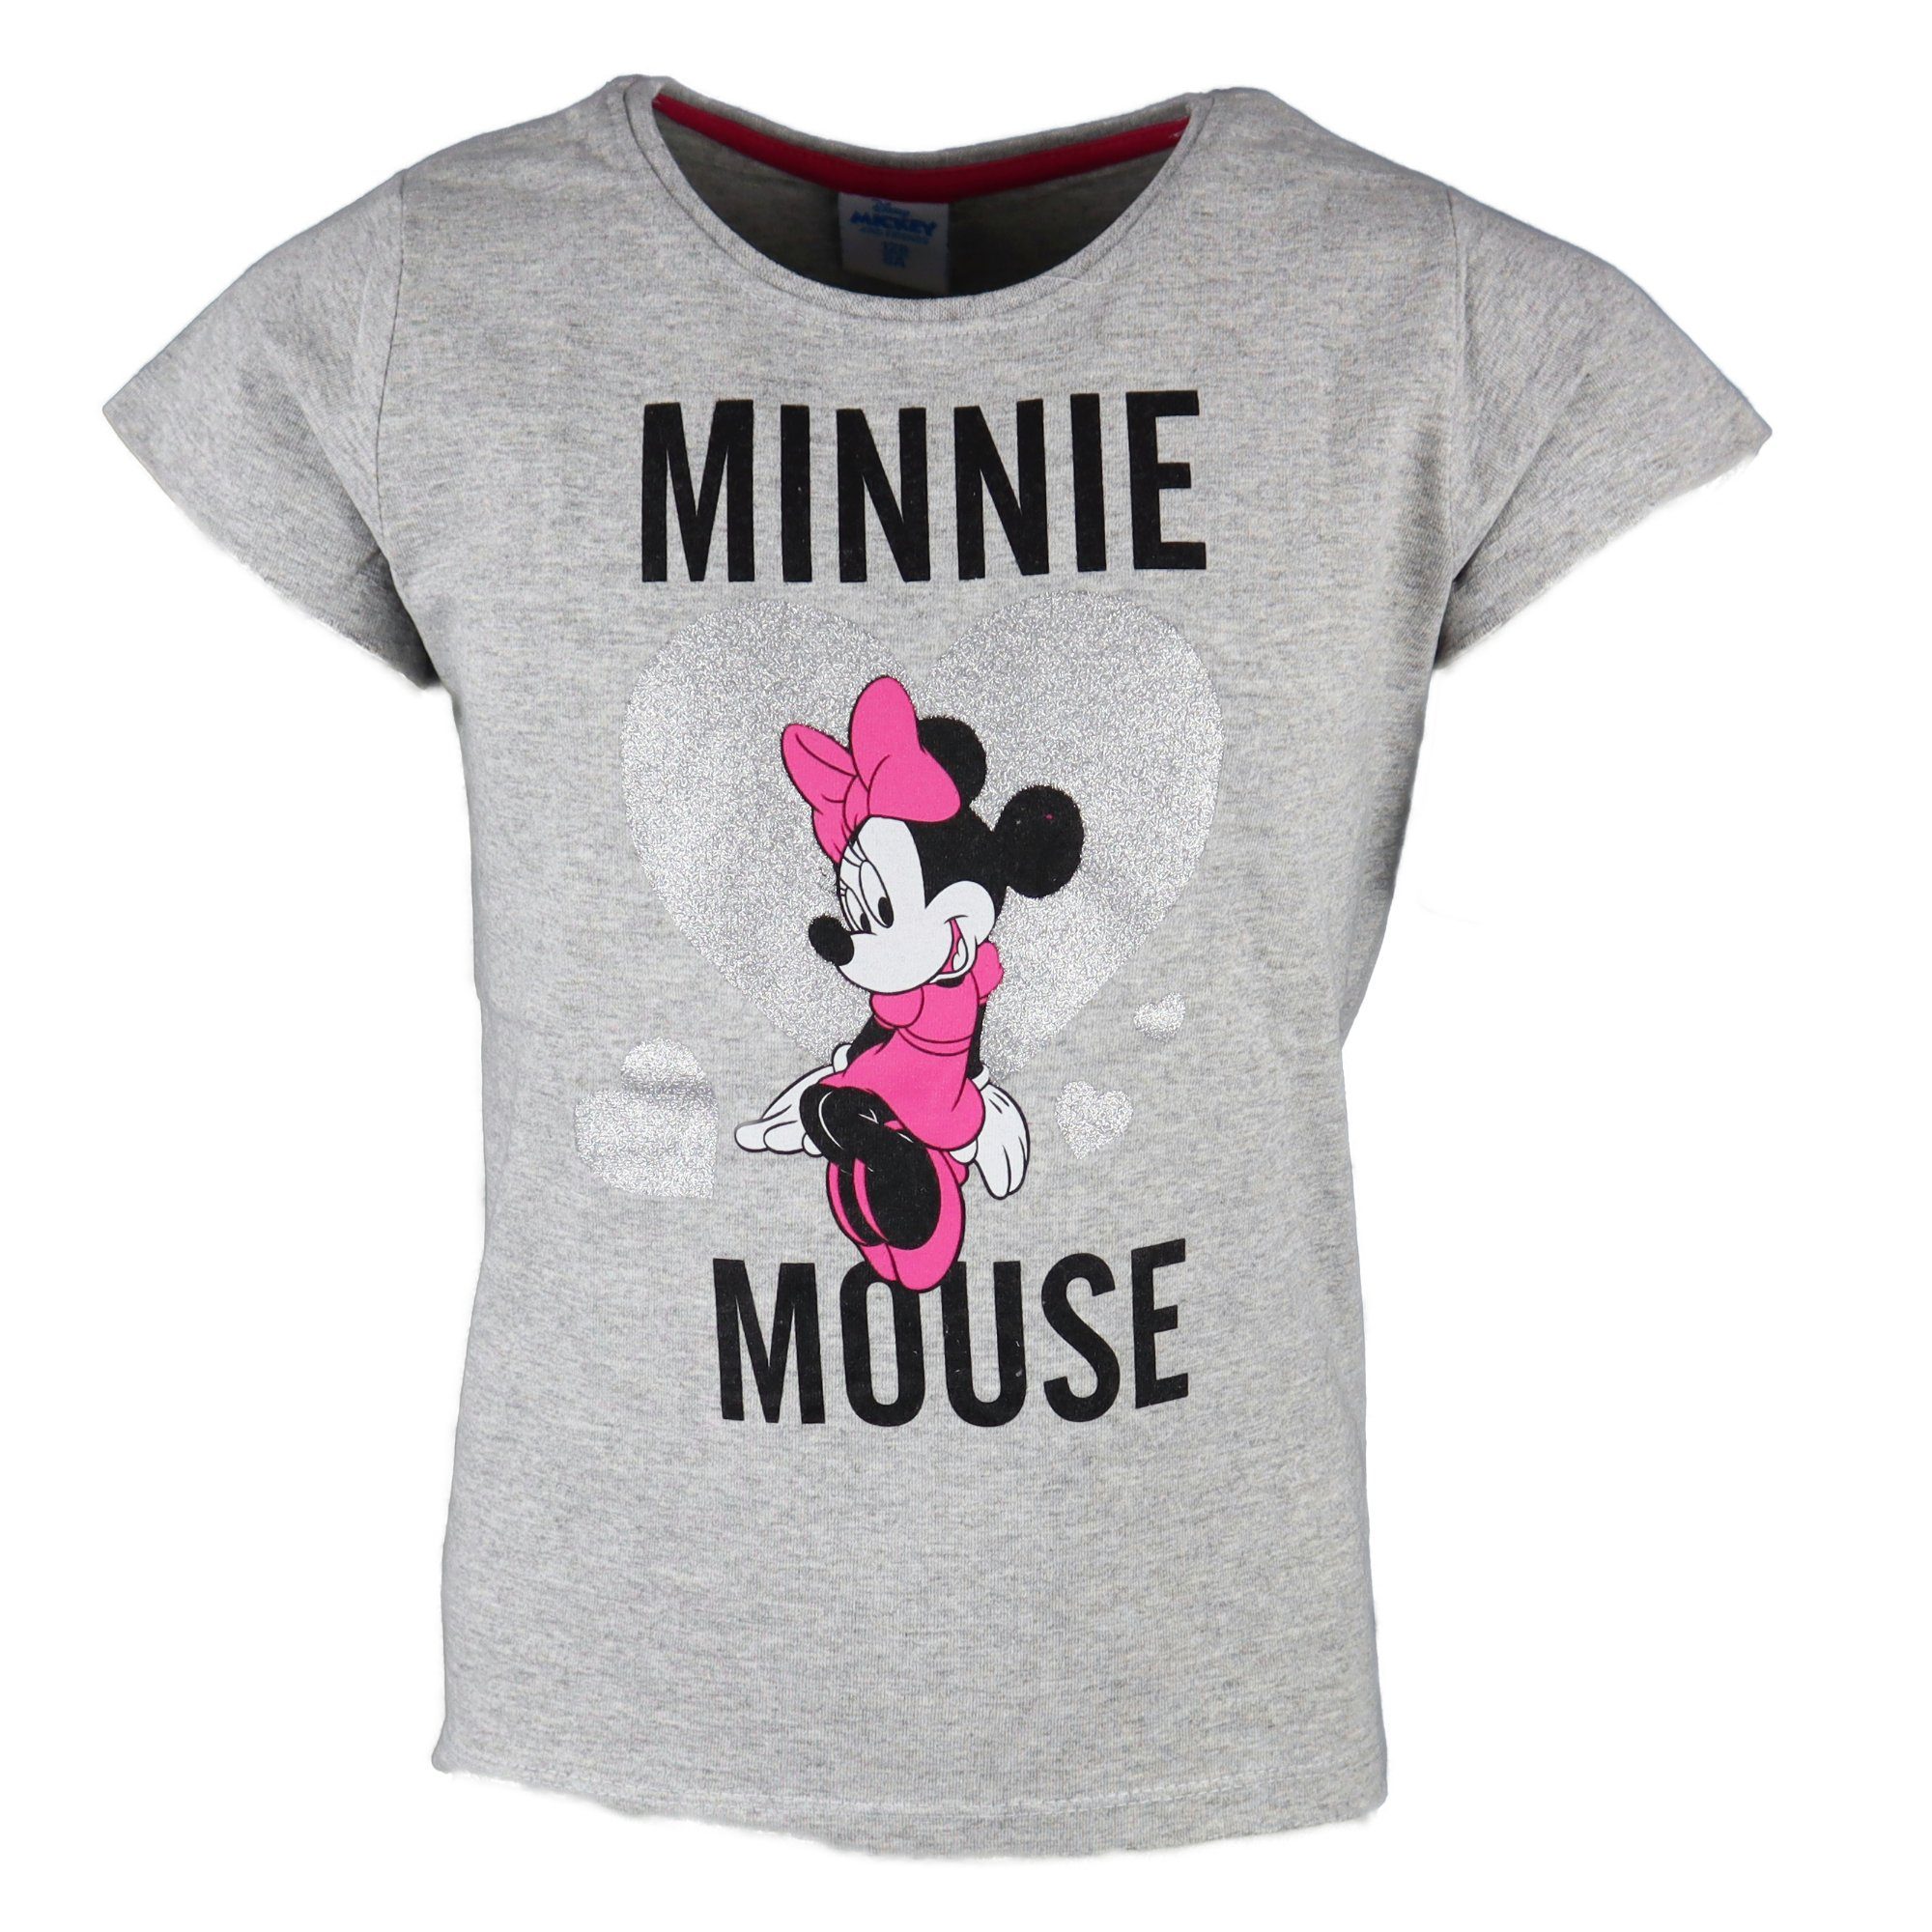 Disney Minnie Mouse bis Maus Gr. Kinder Shirt T-Shirt Grau Love 104 134, oder Minnie Mädchen Schwarz